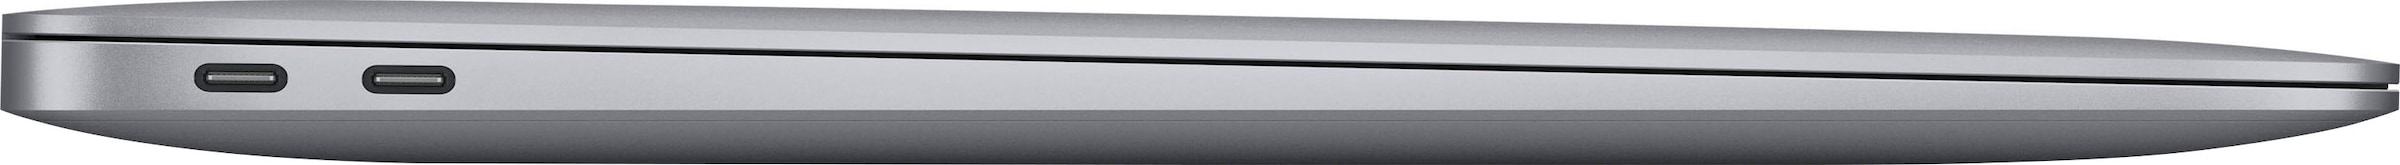 Apple Notebook SSD, 13,3 Rechnung auf cm, Zoll, / 256 8-core kaufen M1, CPU Apple, »MacBook 33,78 M1, Air«, GB